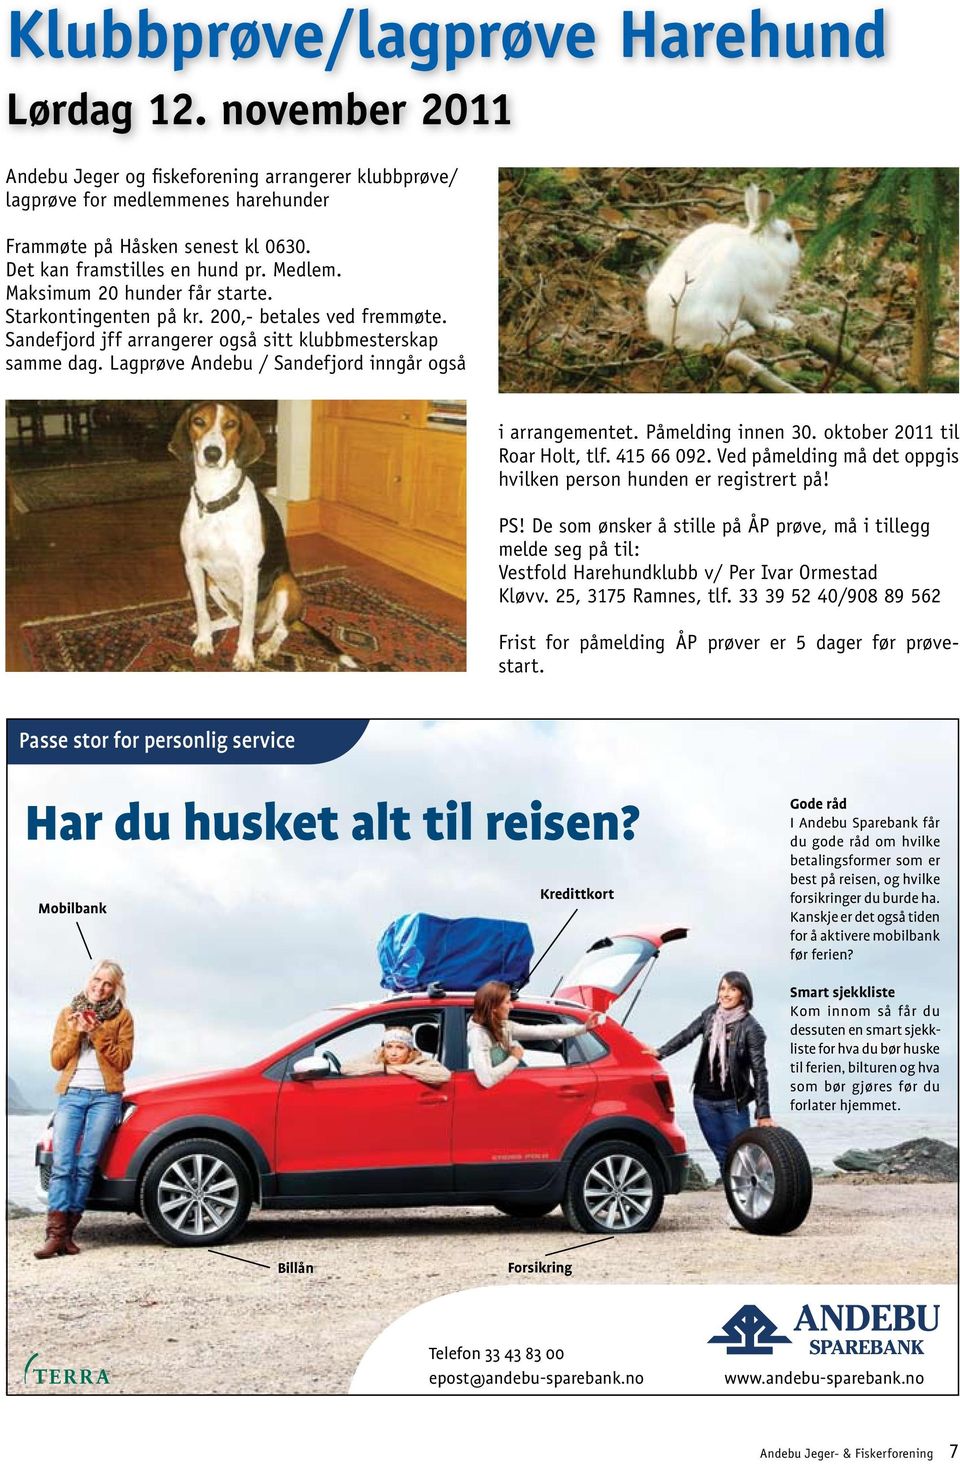 Lagprøve Andebu / Sandefjord inngår også i arrangementet. Påmelding innen 30. oktober 2011 til Roar Holt, tlf. 415 66 092. Ved påmelding må det oppgis hvilken person hunden er registrert på! PS!